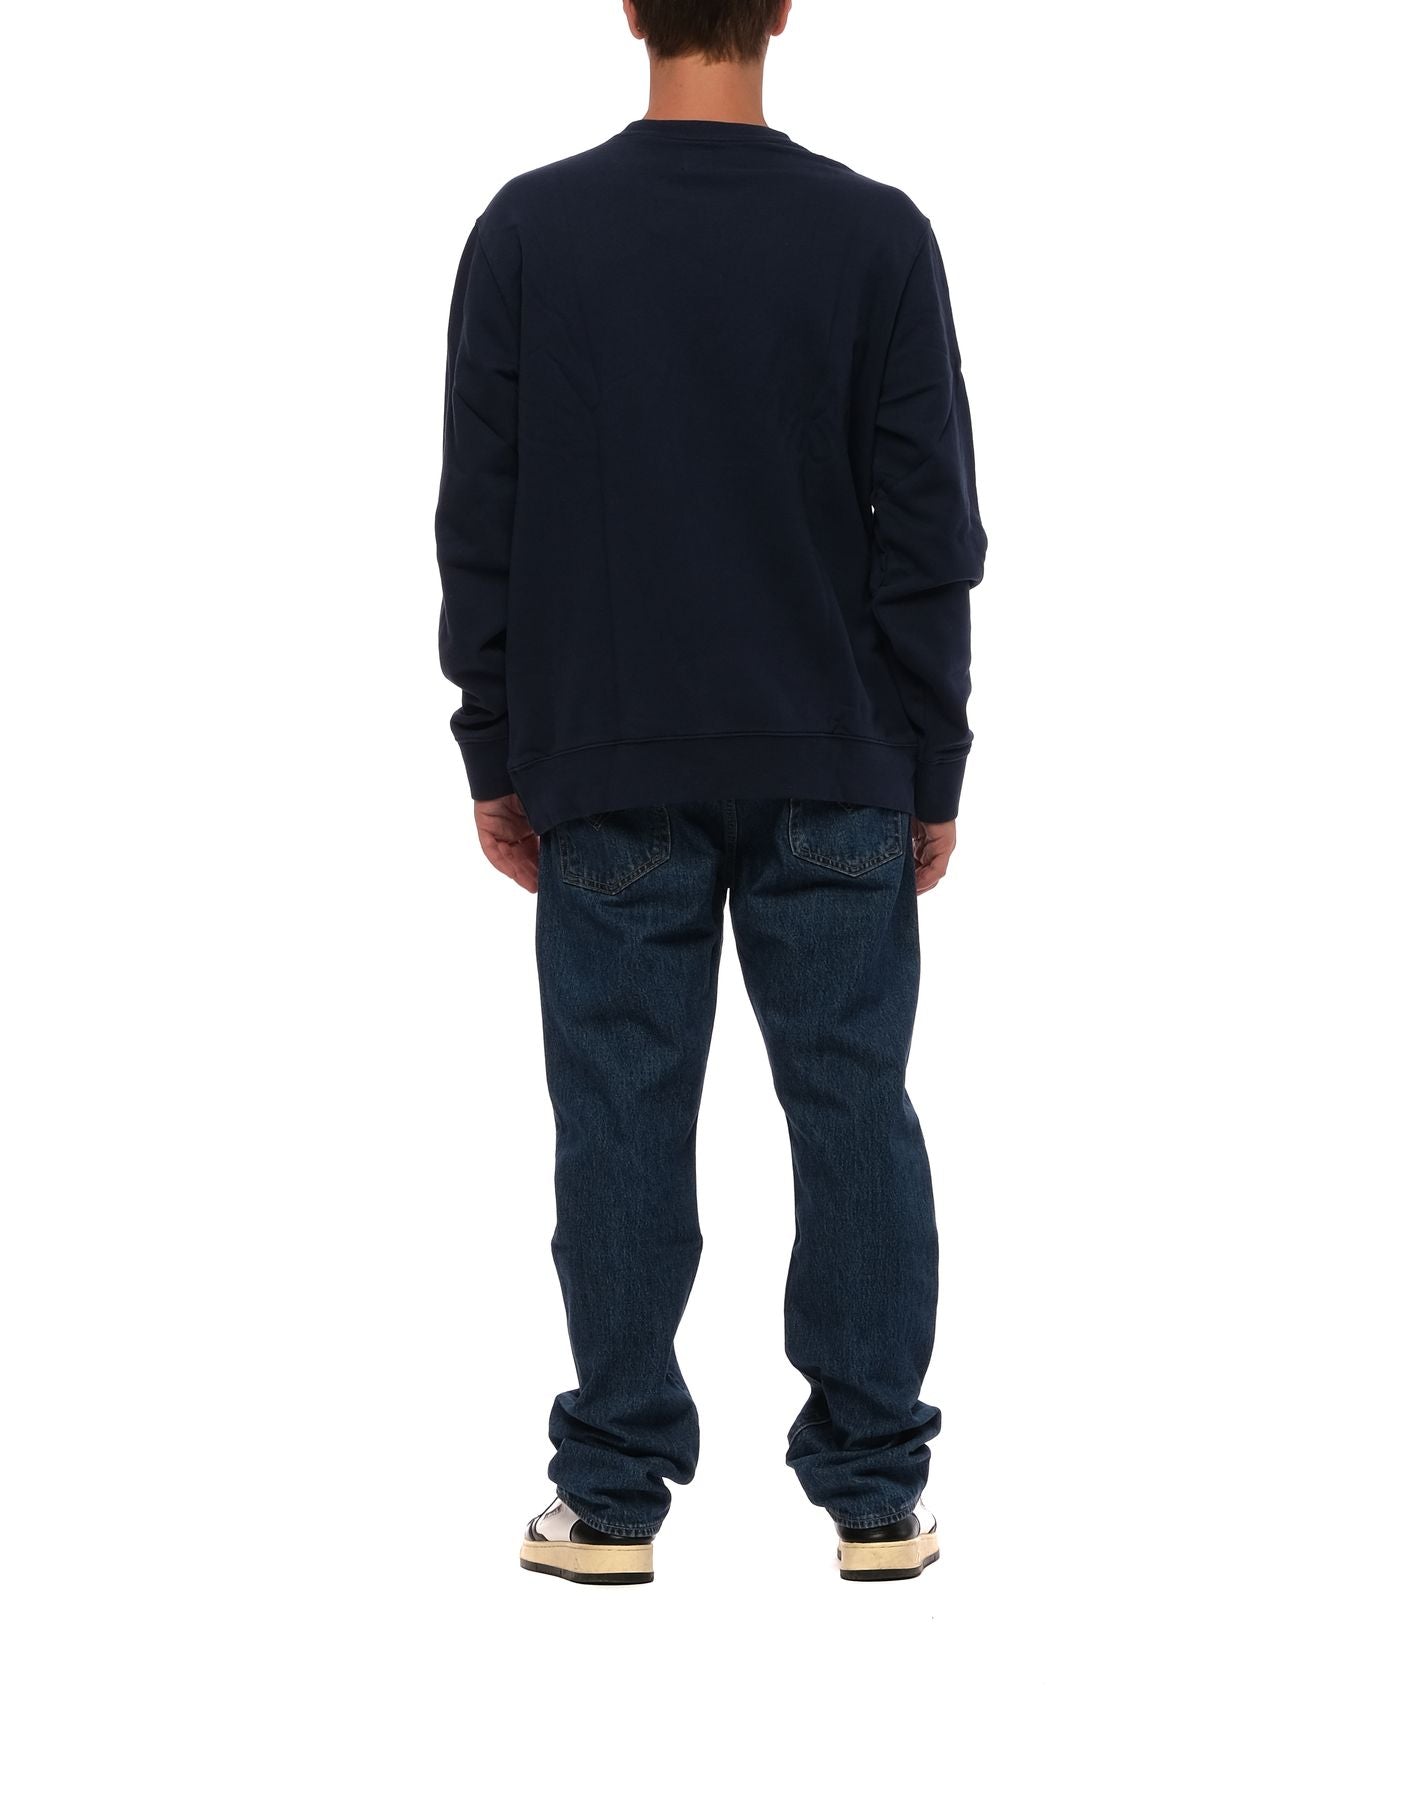 Sweatshirt pour homme 35909 0001 DRESS BLUE Levi's